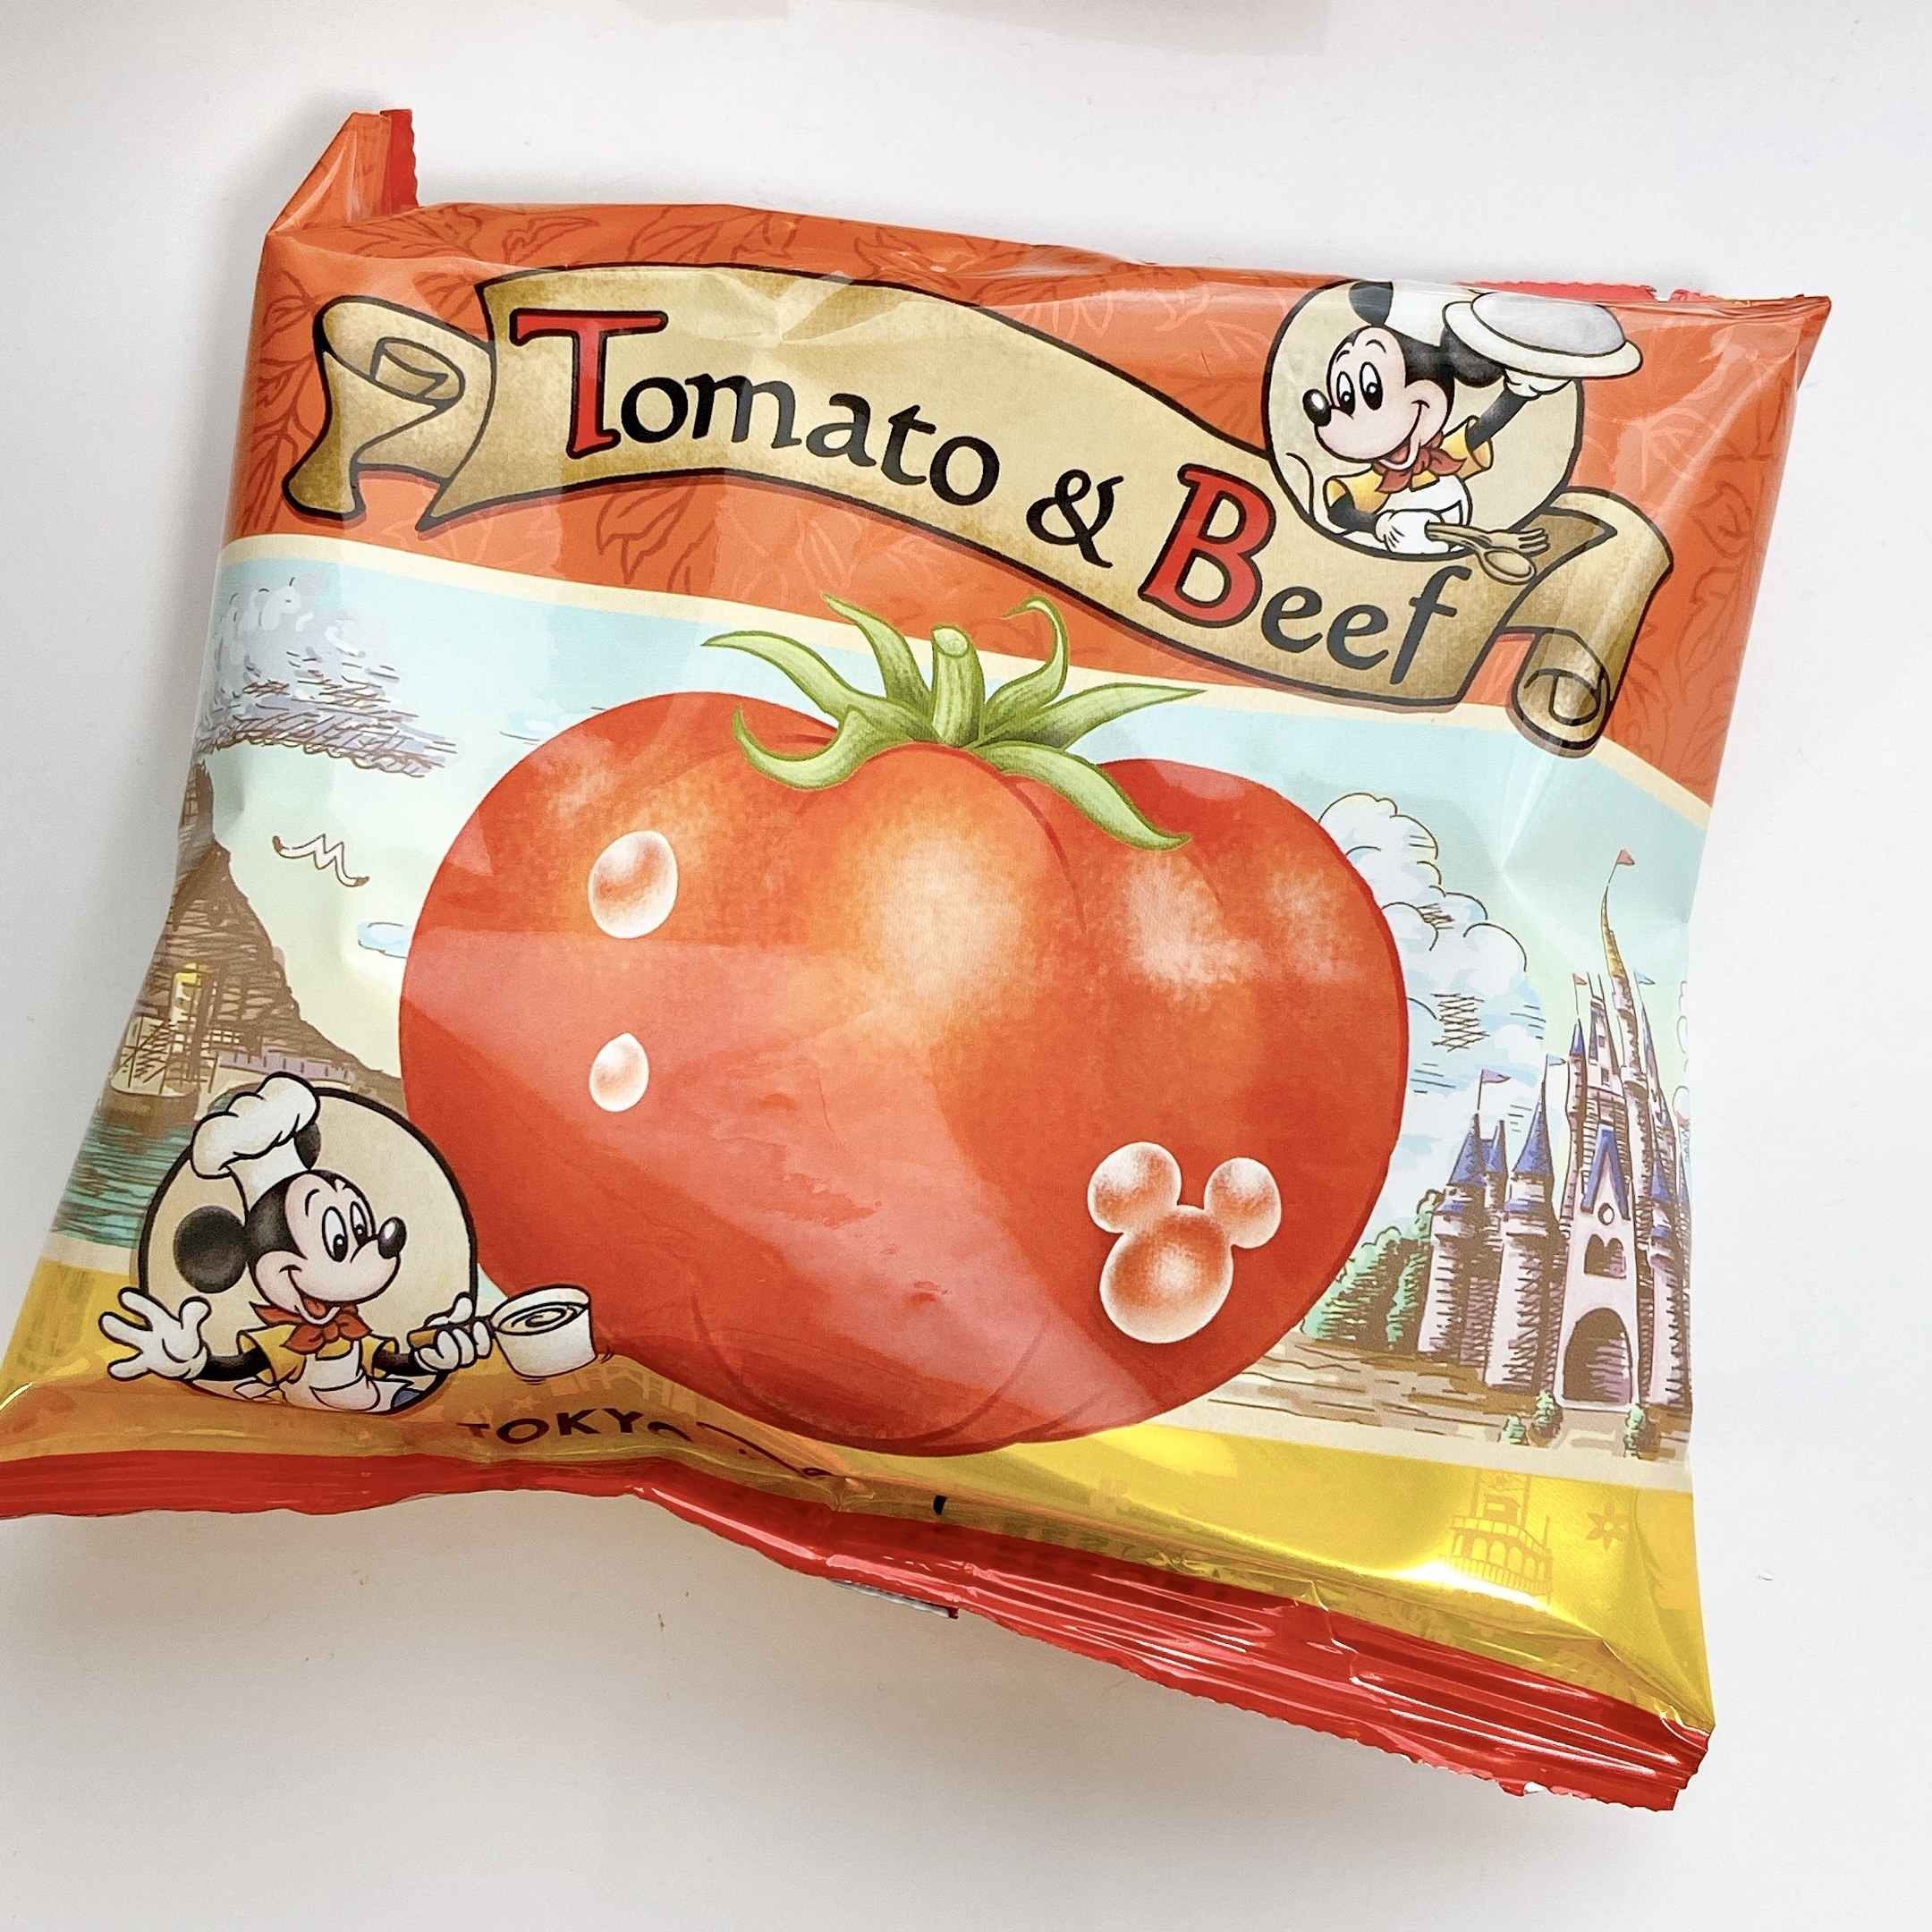 東京ディズニーランド（Tokyo Dineyland）のおすすめお土産「トマトスナック缶」ミッキーがかわいい